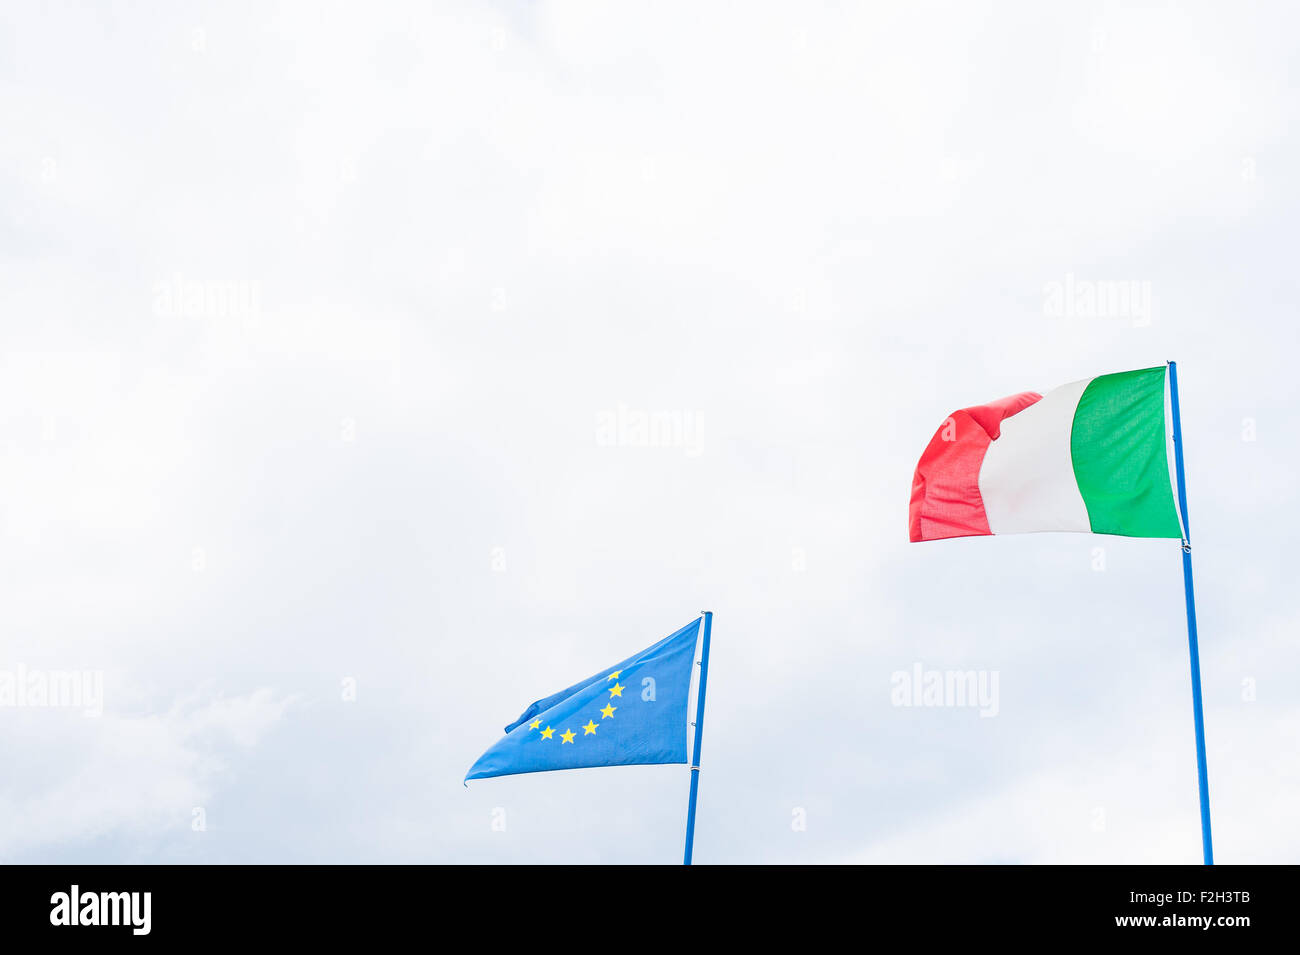 Drapeau de la Communauté européenne et italienne sur ciel nuageux with copy space Banque D'Images